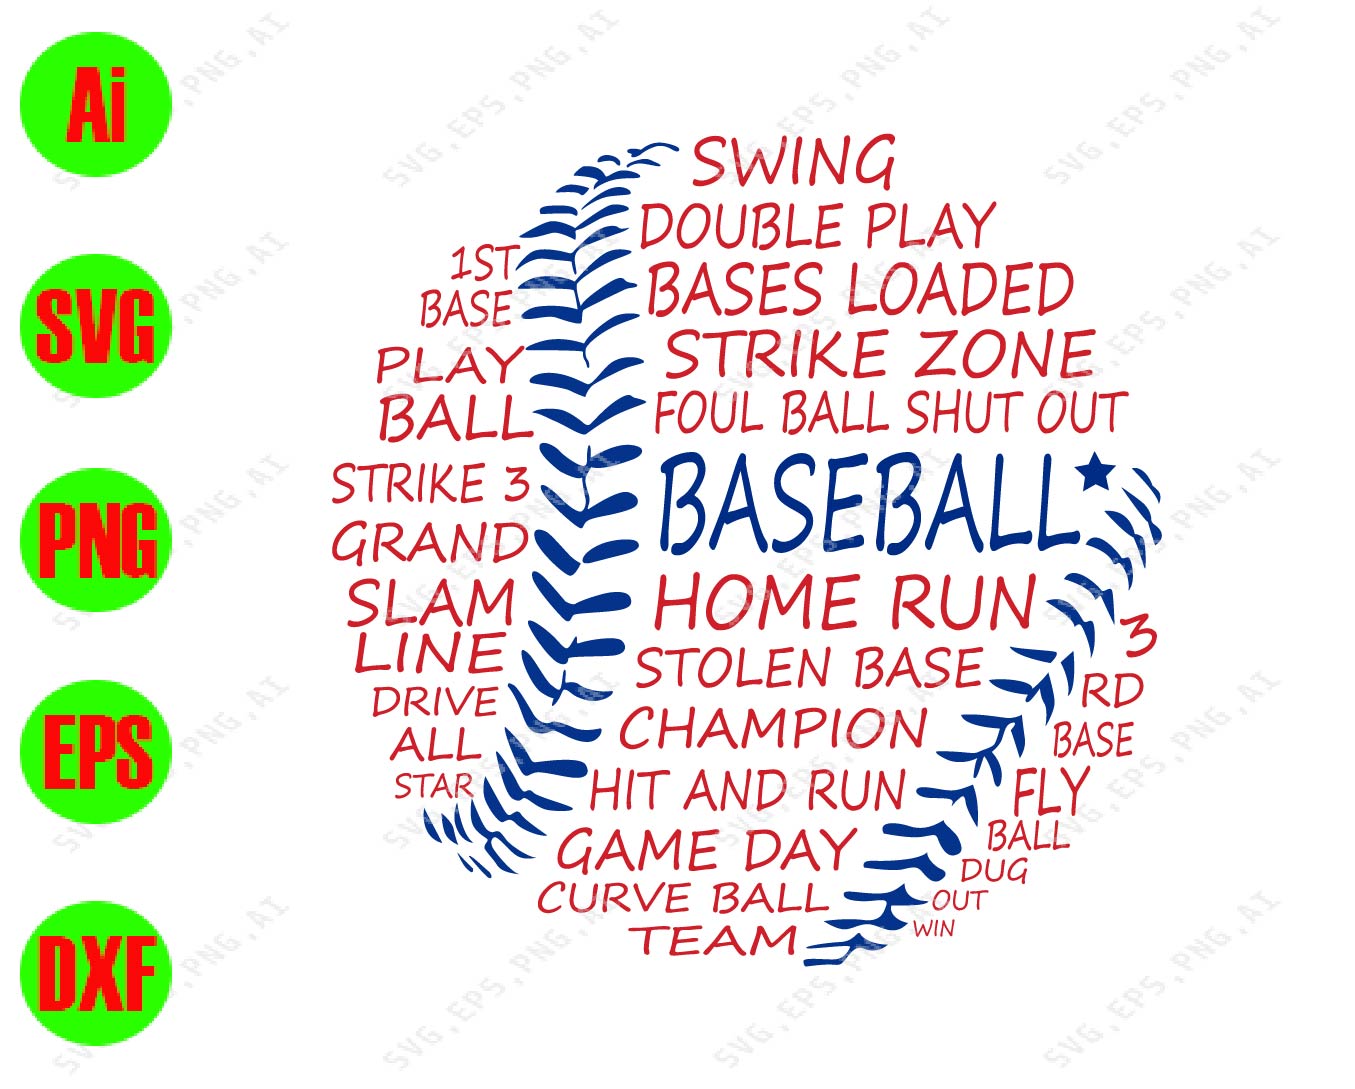 Baseball Home Run Stolen Base Champion Svg Dxf Eps Png Digital Download Designbtf Com